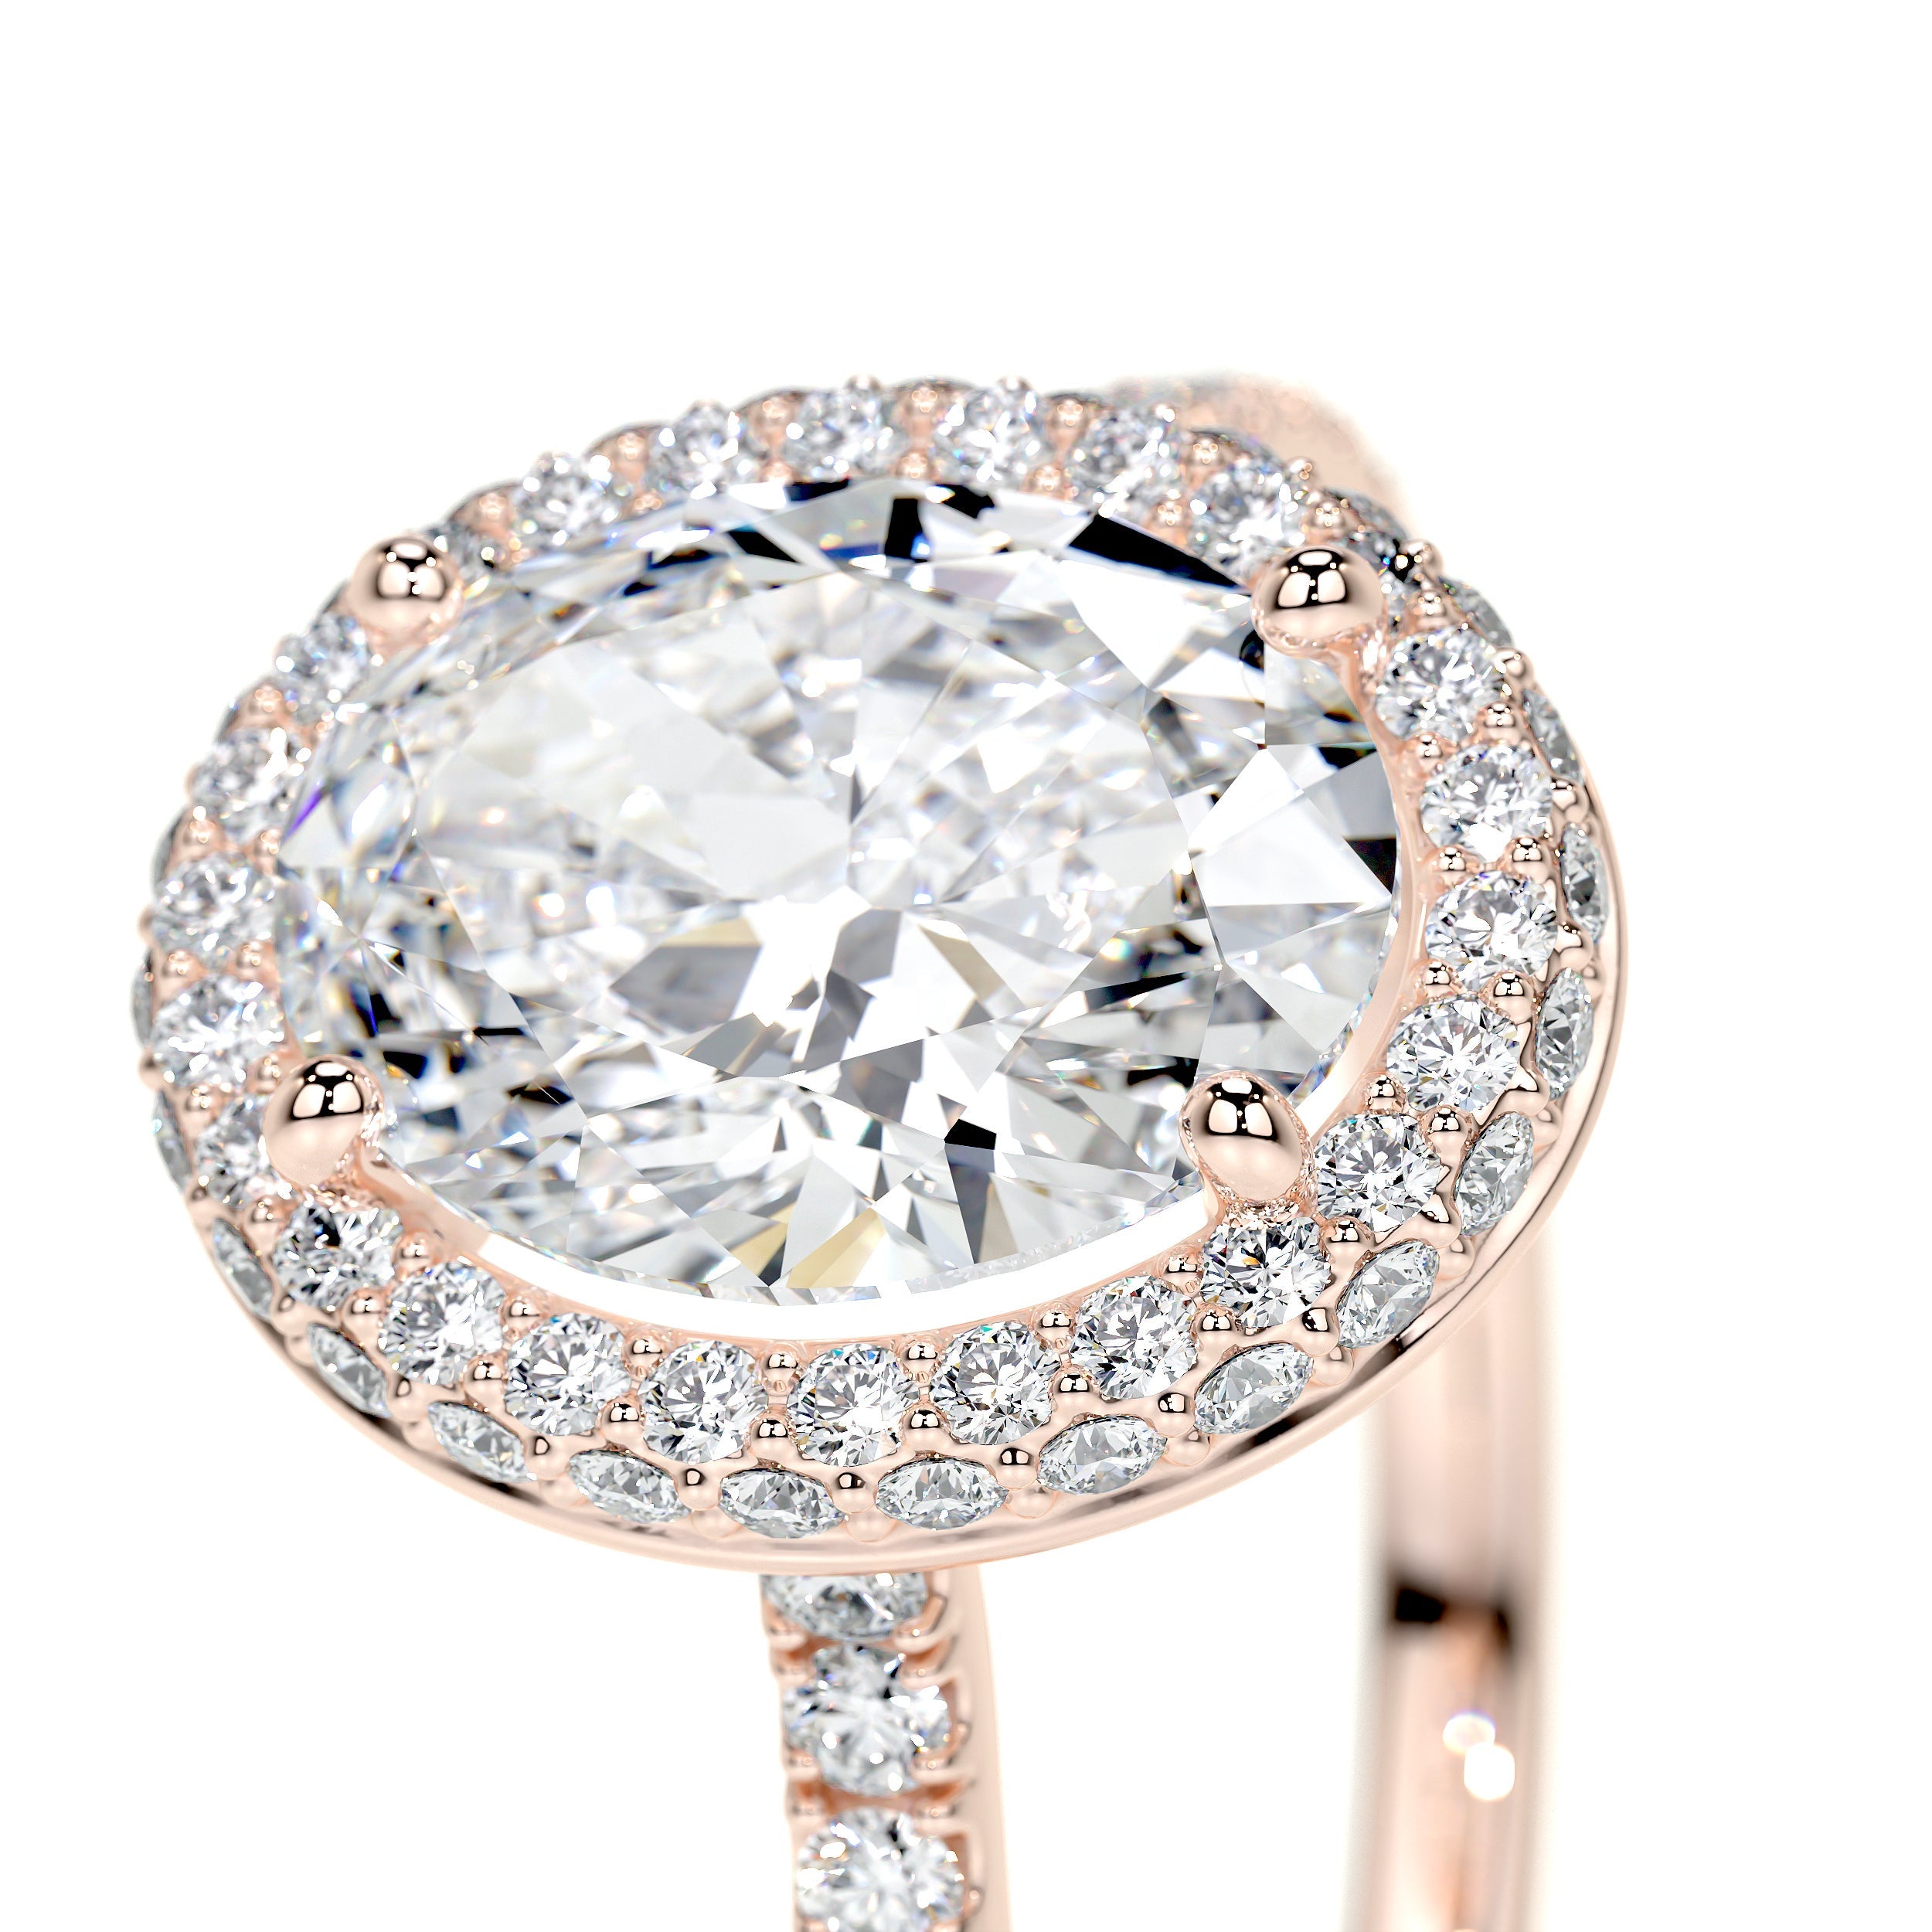 Parker Lab Grown Diamond Ring   (2.40 Carat) -14K Rose Gold